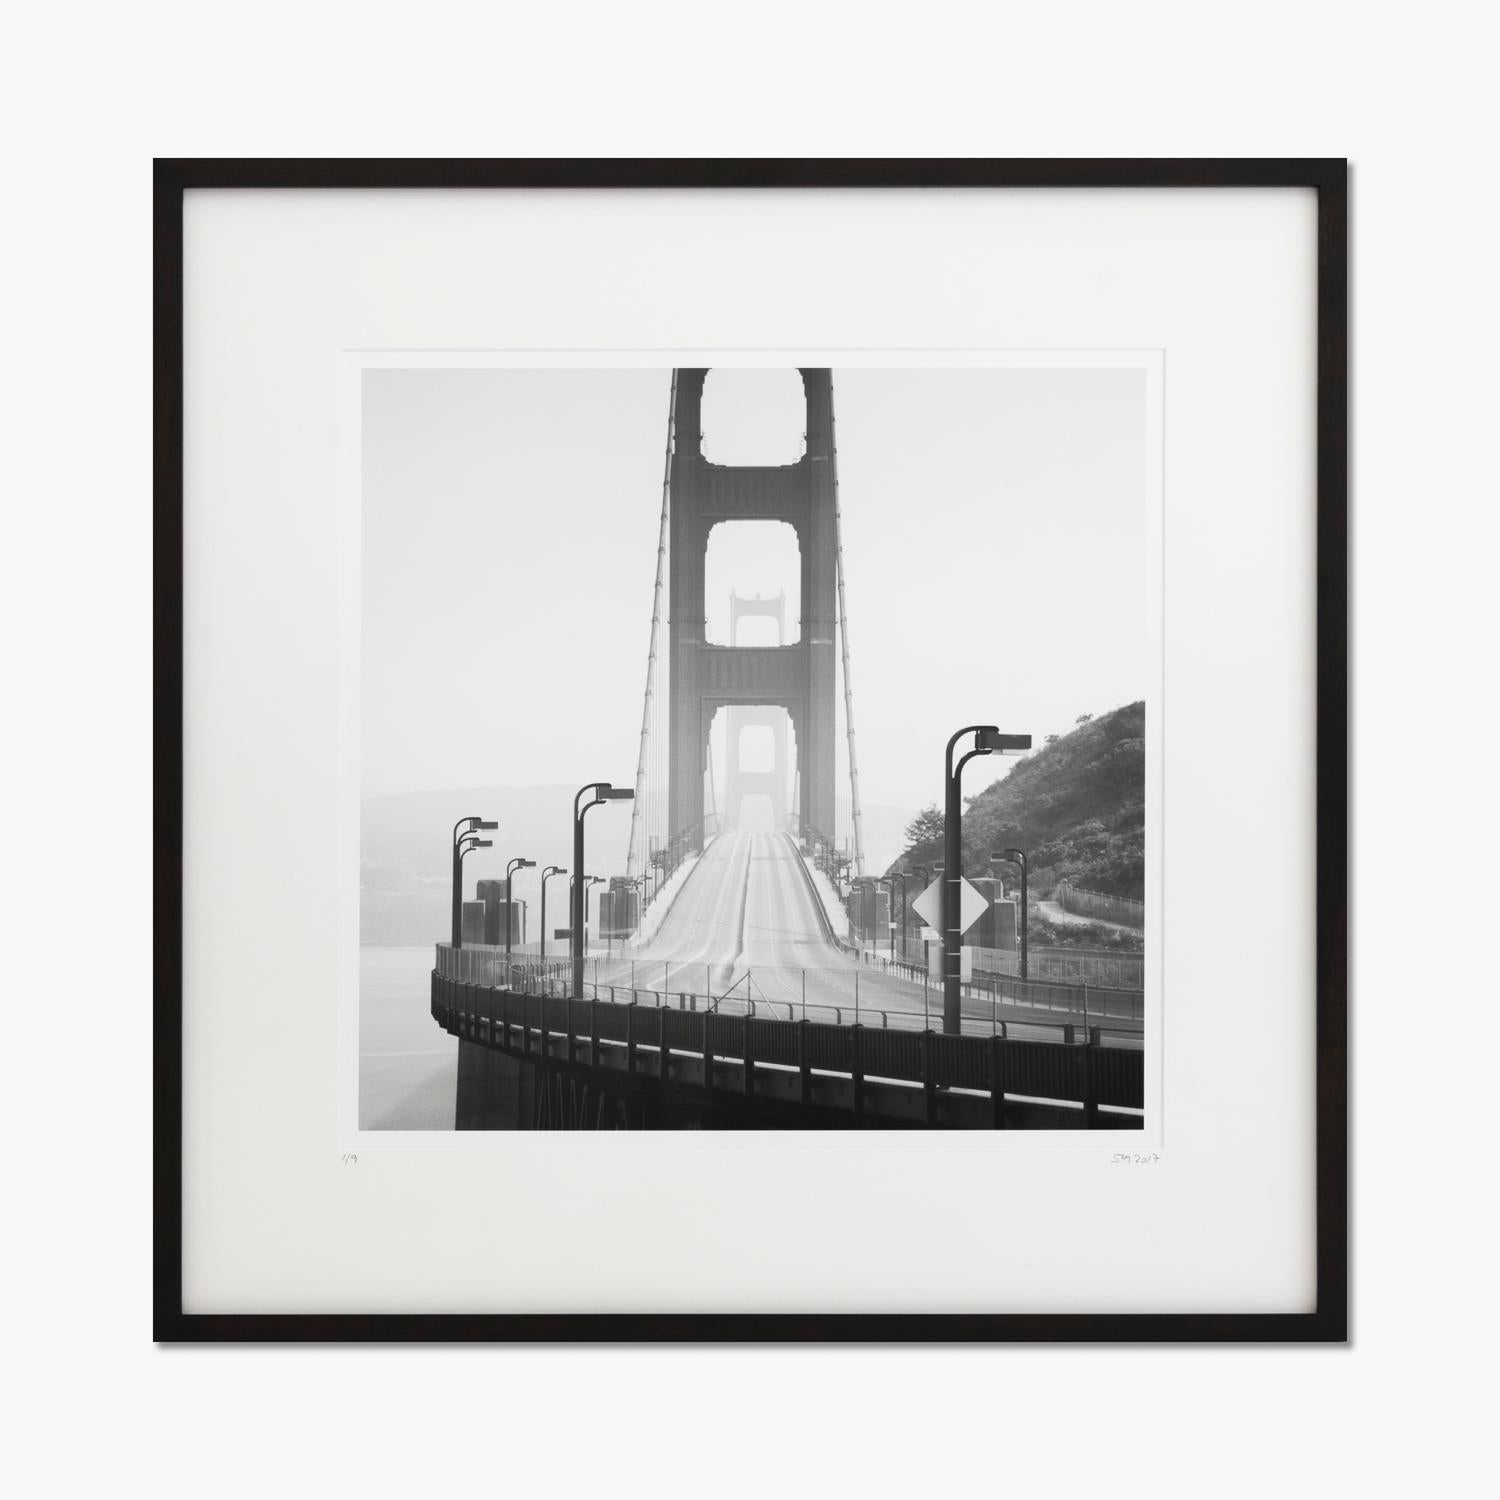 Golden Gate, CA, USA, photographie d'art gélatino-argentique en noir et blanc, encadrée